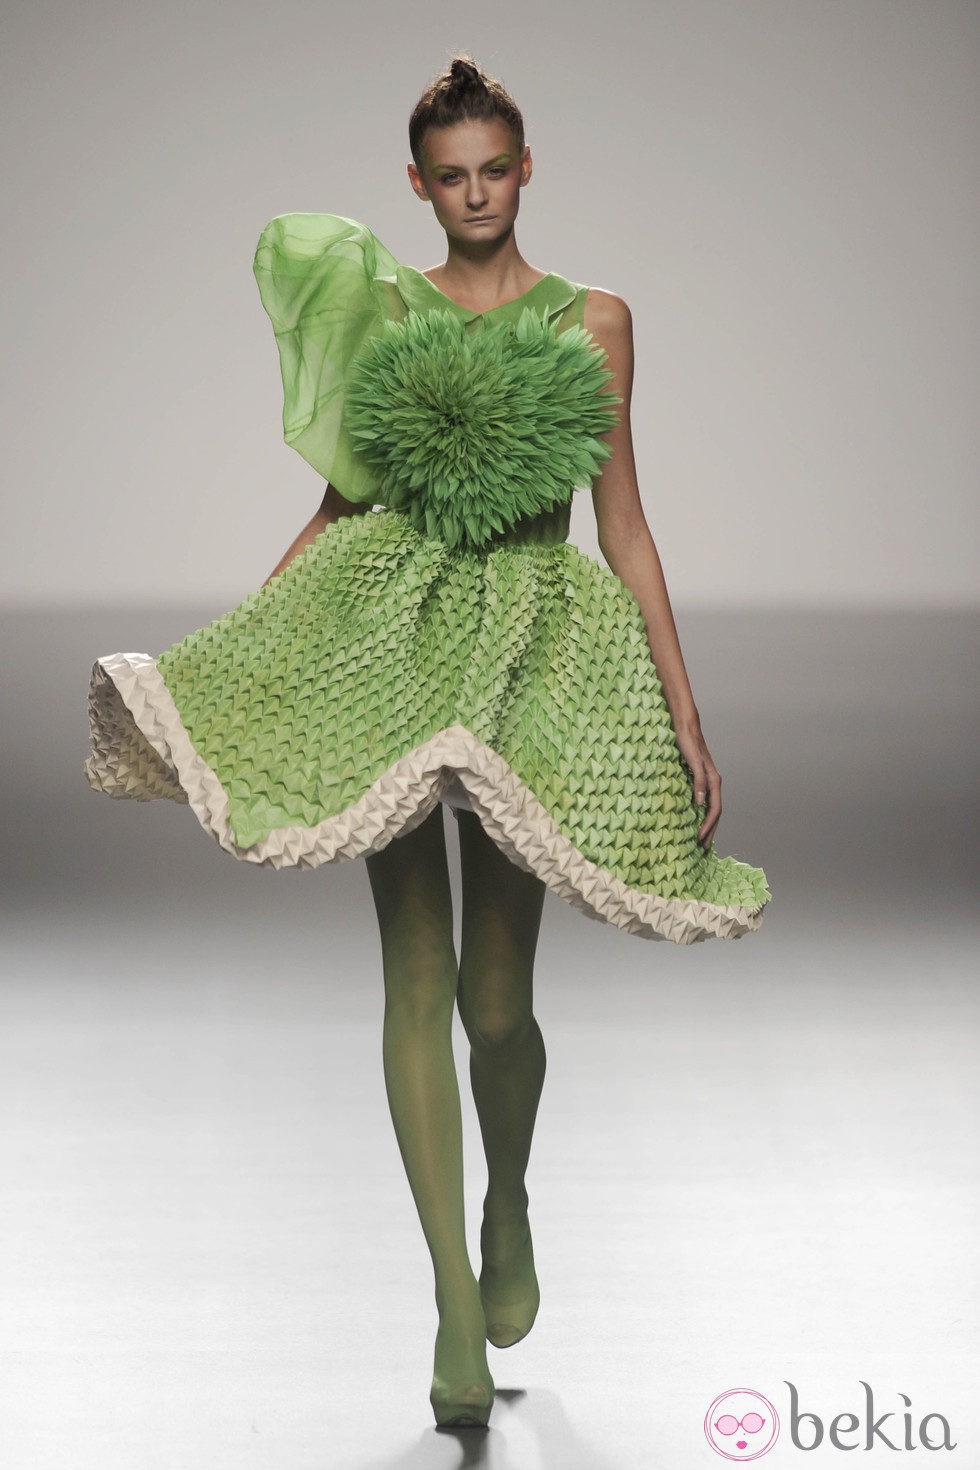 Vestido verde armado con flor de origami de la colección primavera/verano 2013 de Eva Soto